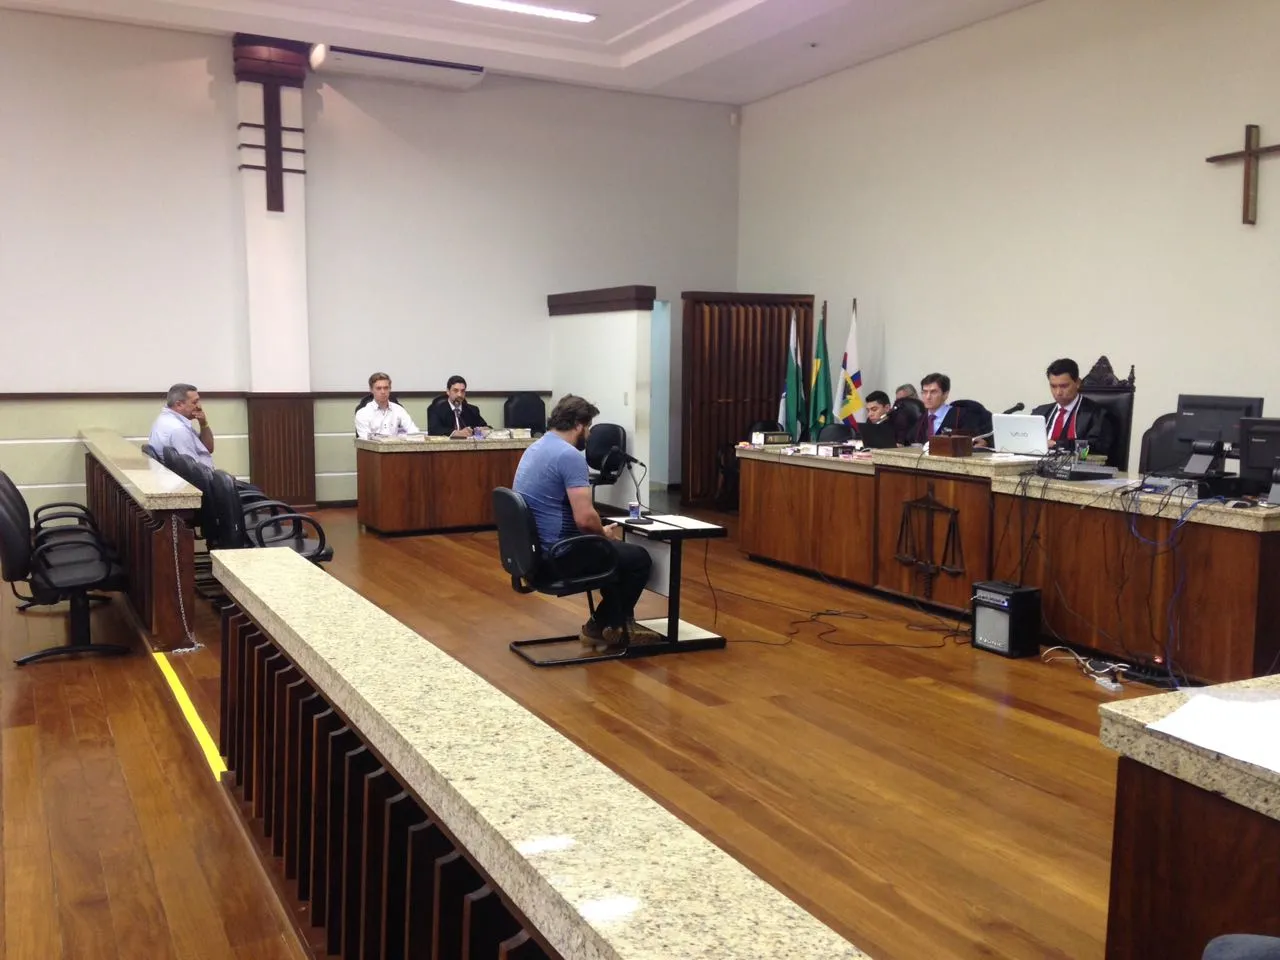 Acusado de homicídio é julgado hoje em Apucarana